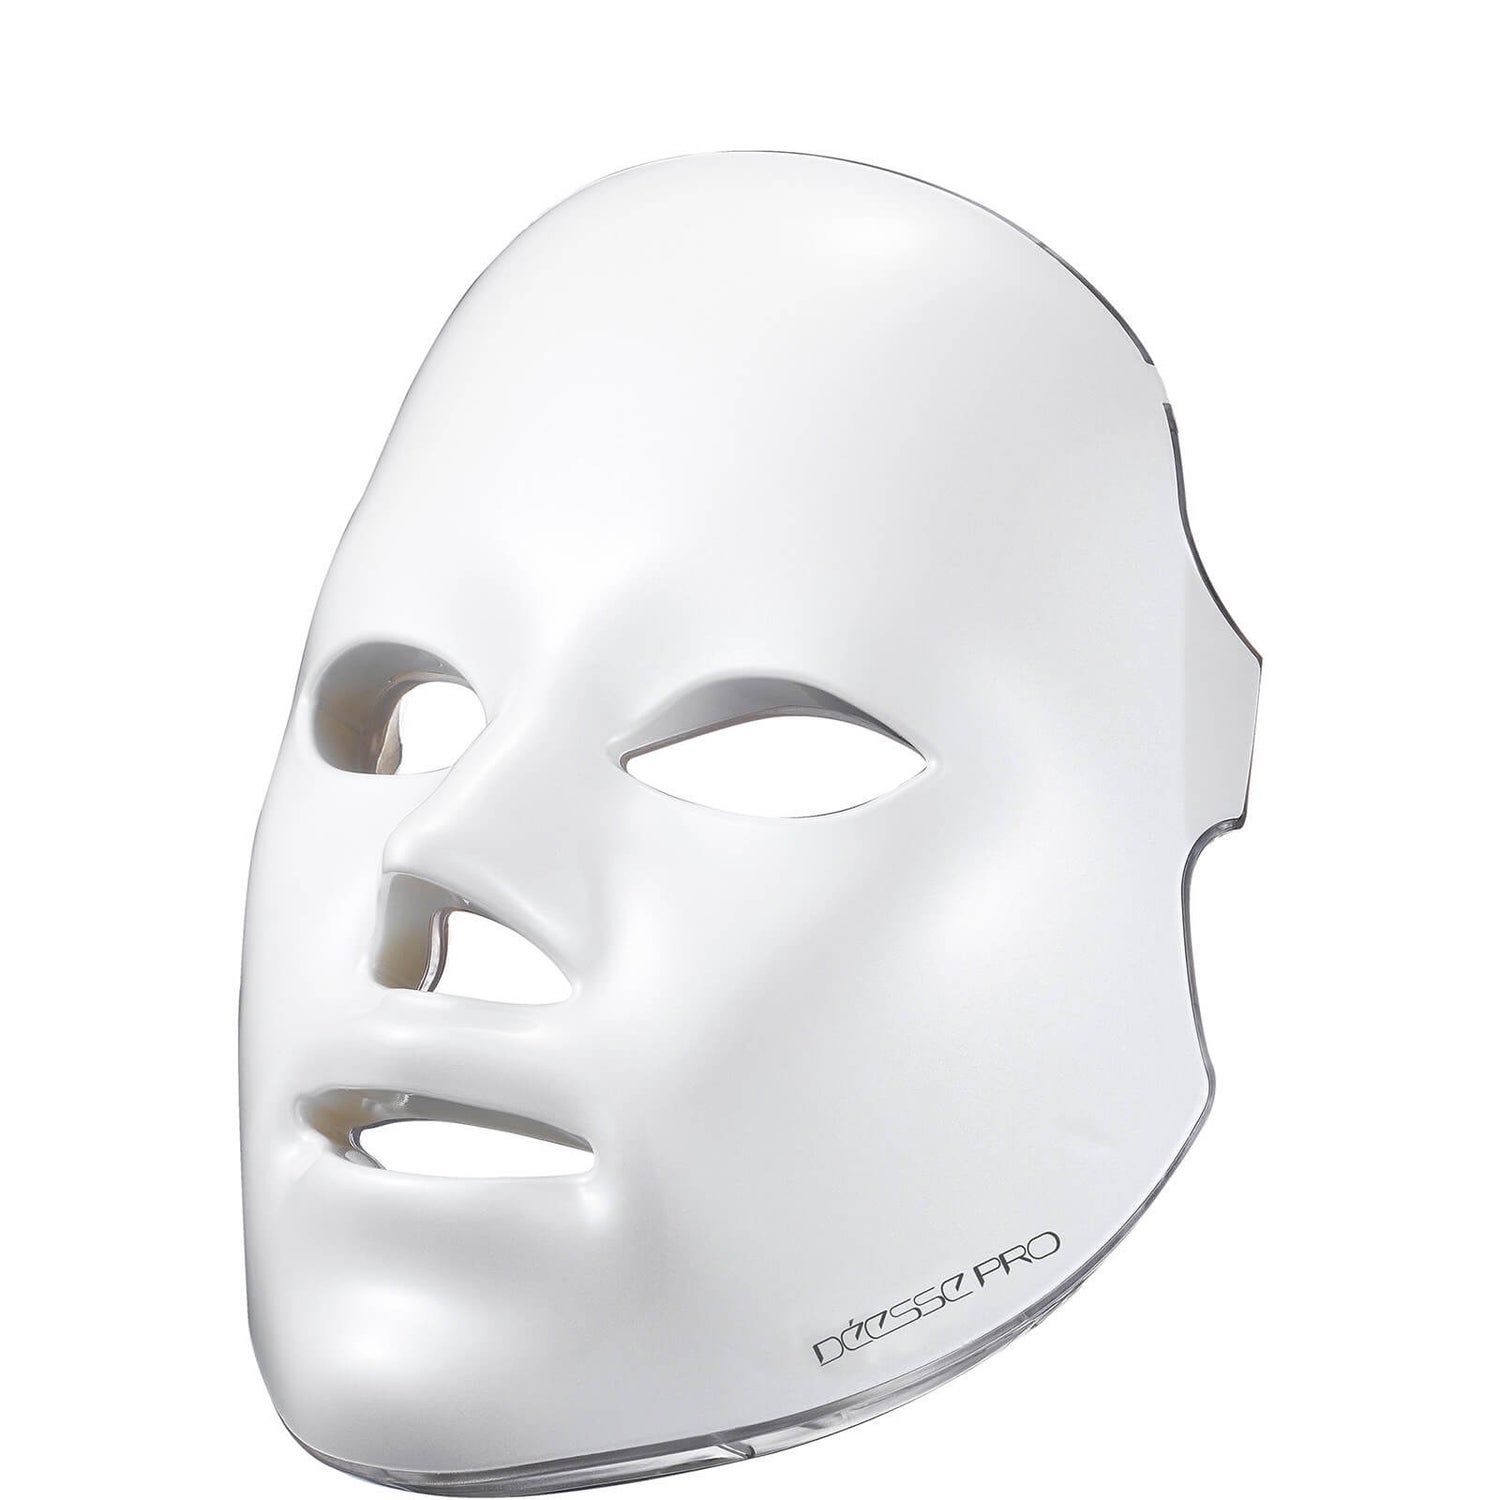 Déesse PRO LED Phototherapy Mask